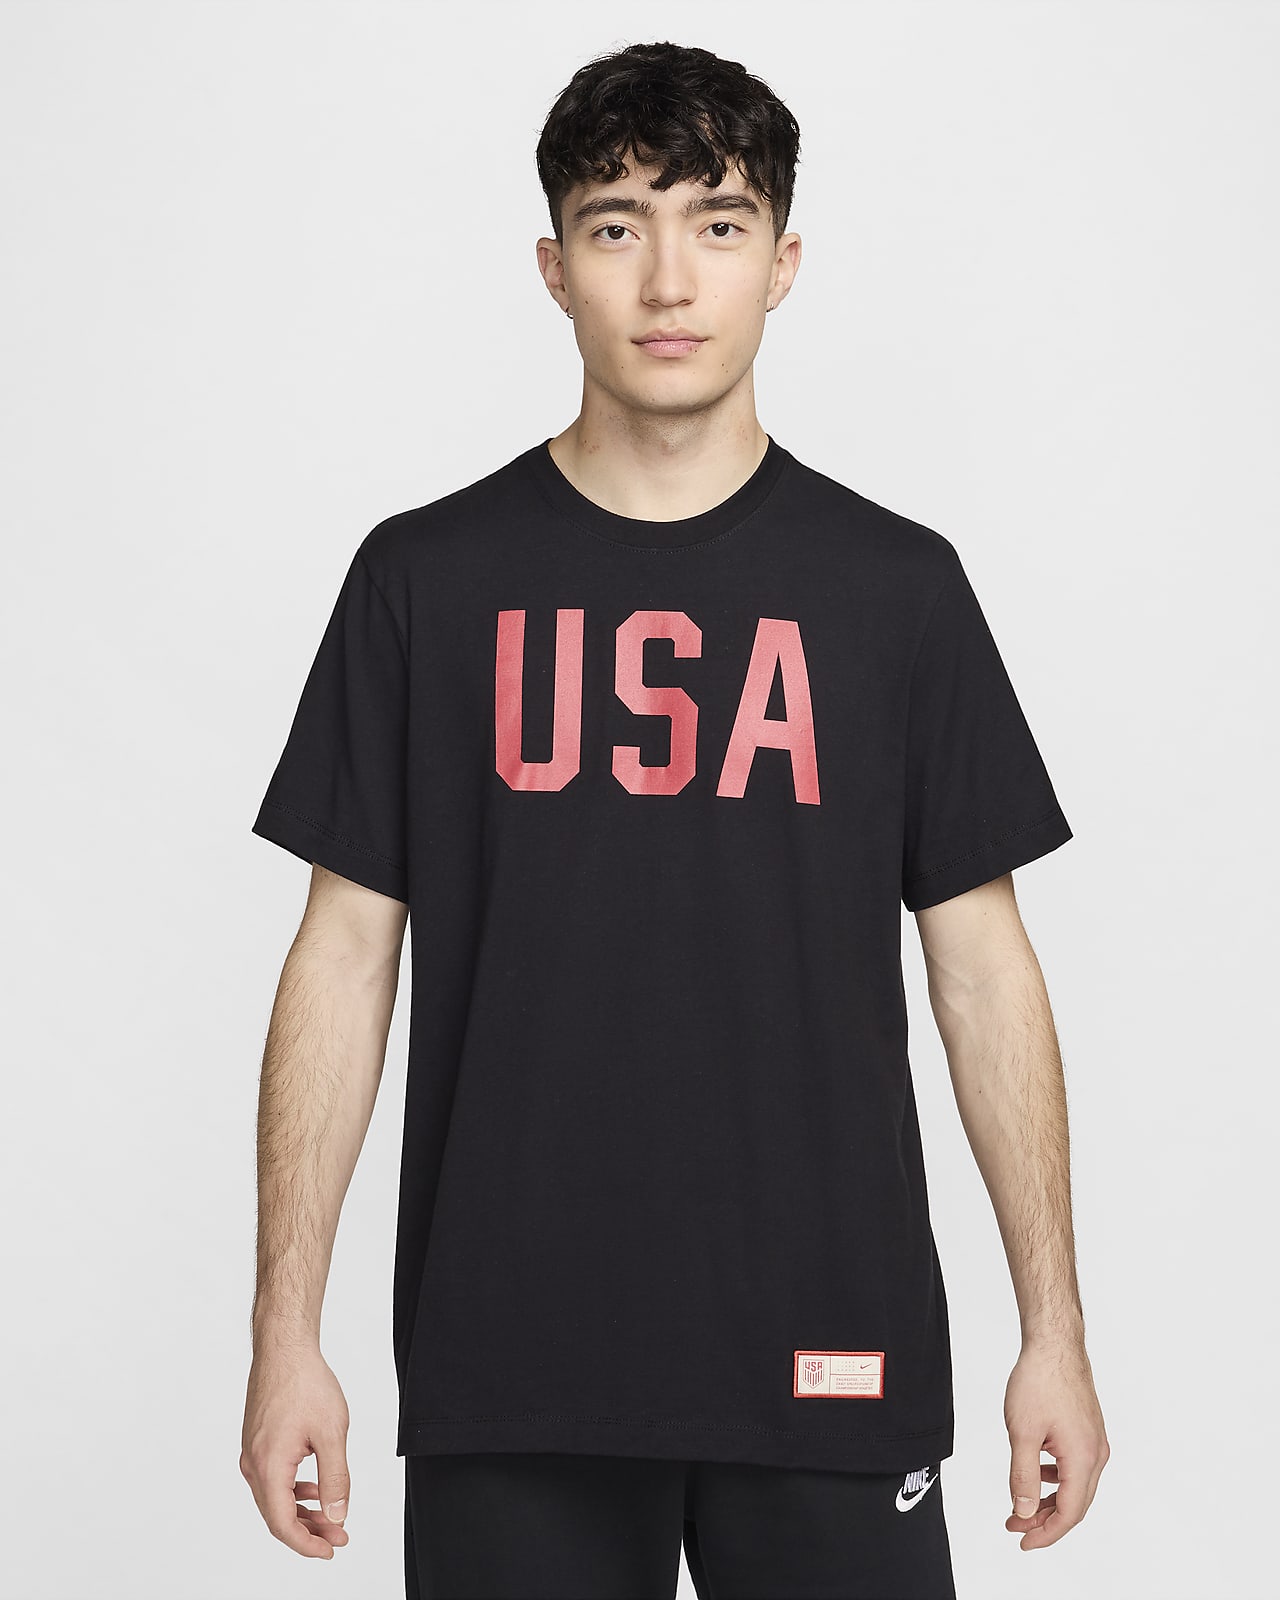 USMNT Men's Nike Soccer T-Shirt